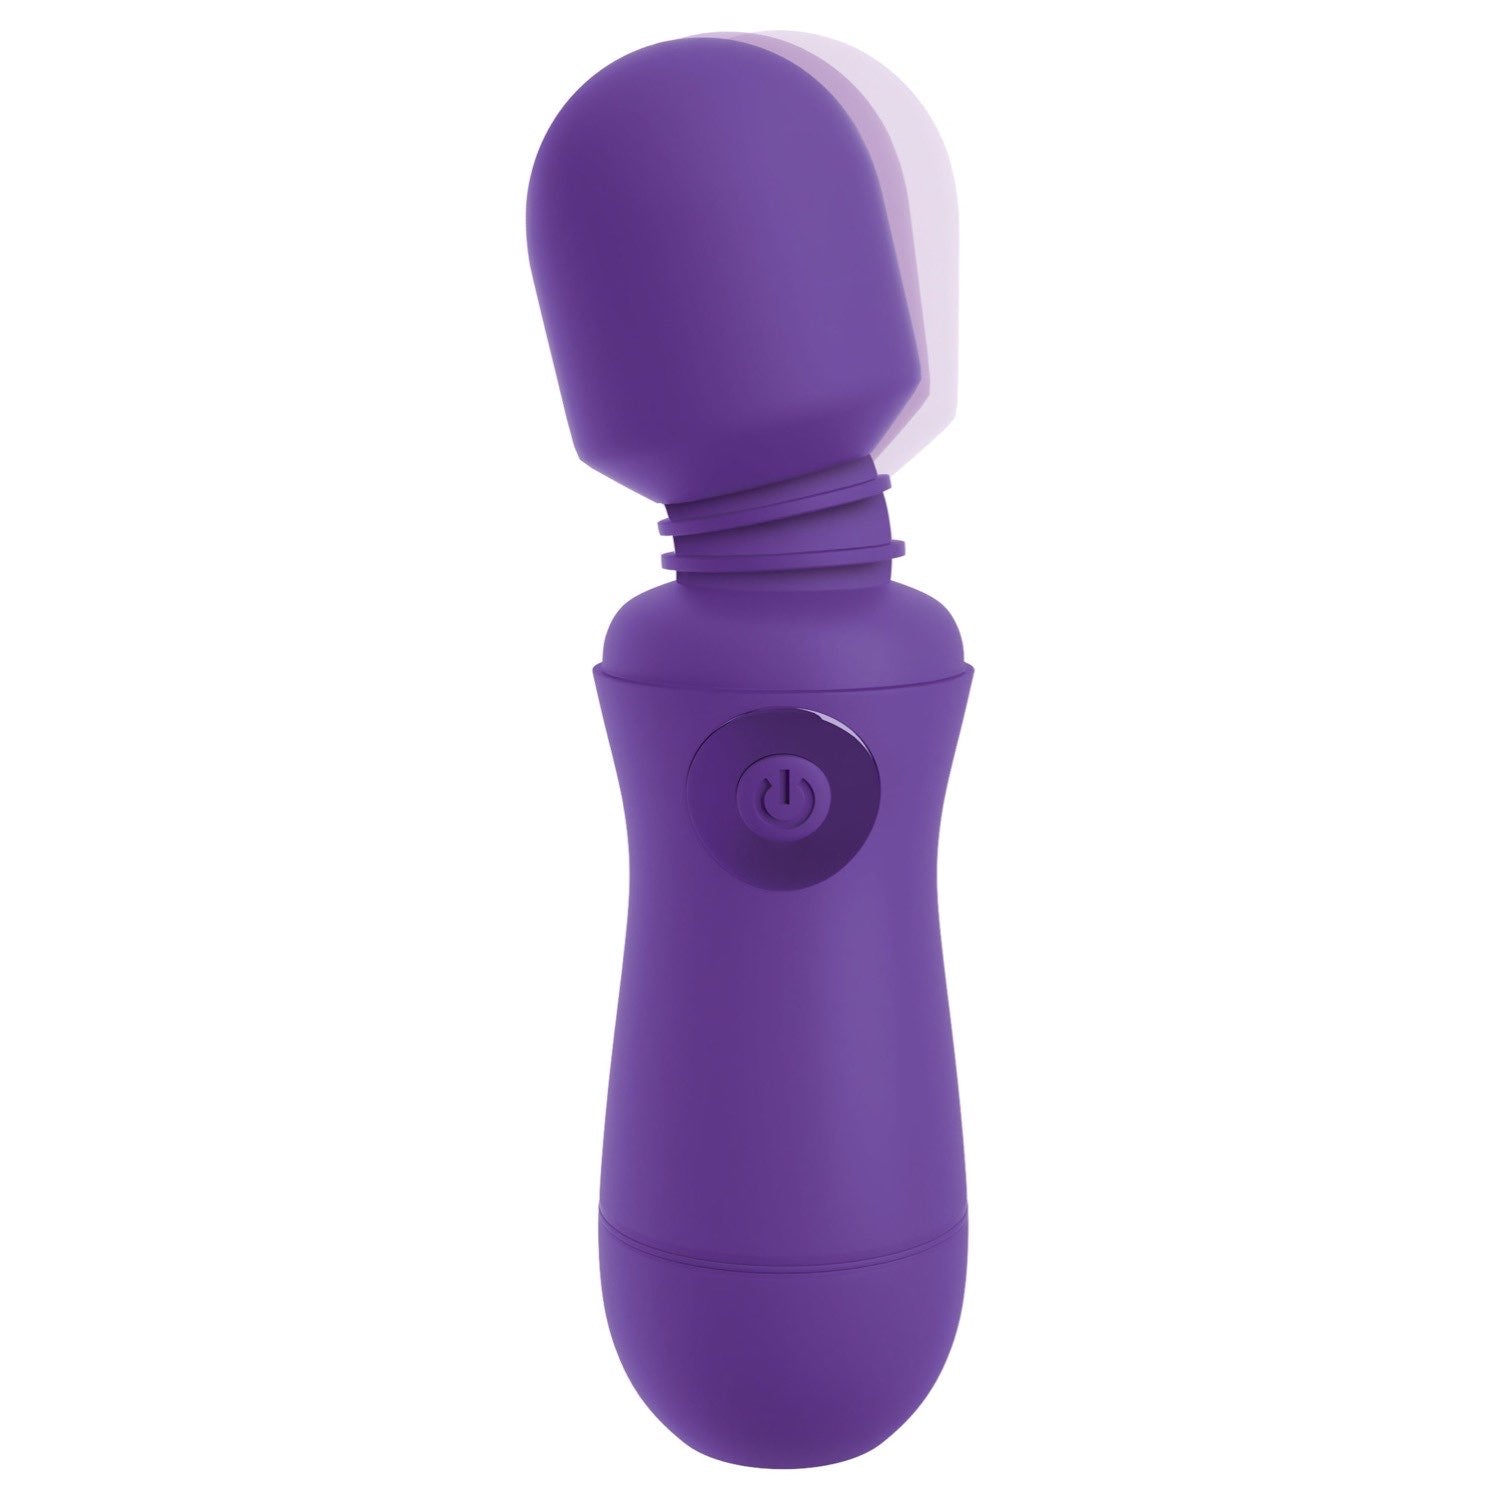 我的天啊！ 我的天啊！魔杖 #Enjoy - 紫色 USB 充电按摩棒 by Pipedream